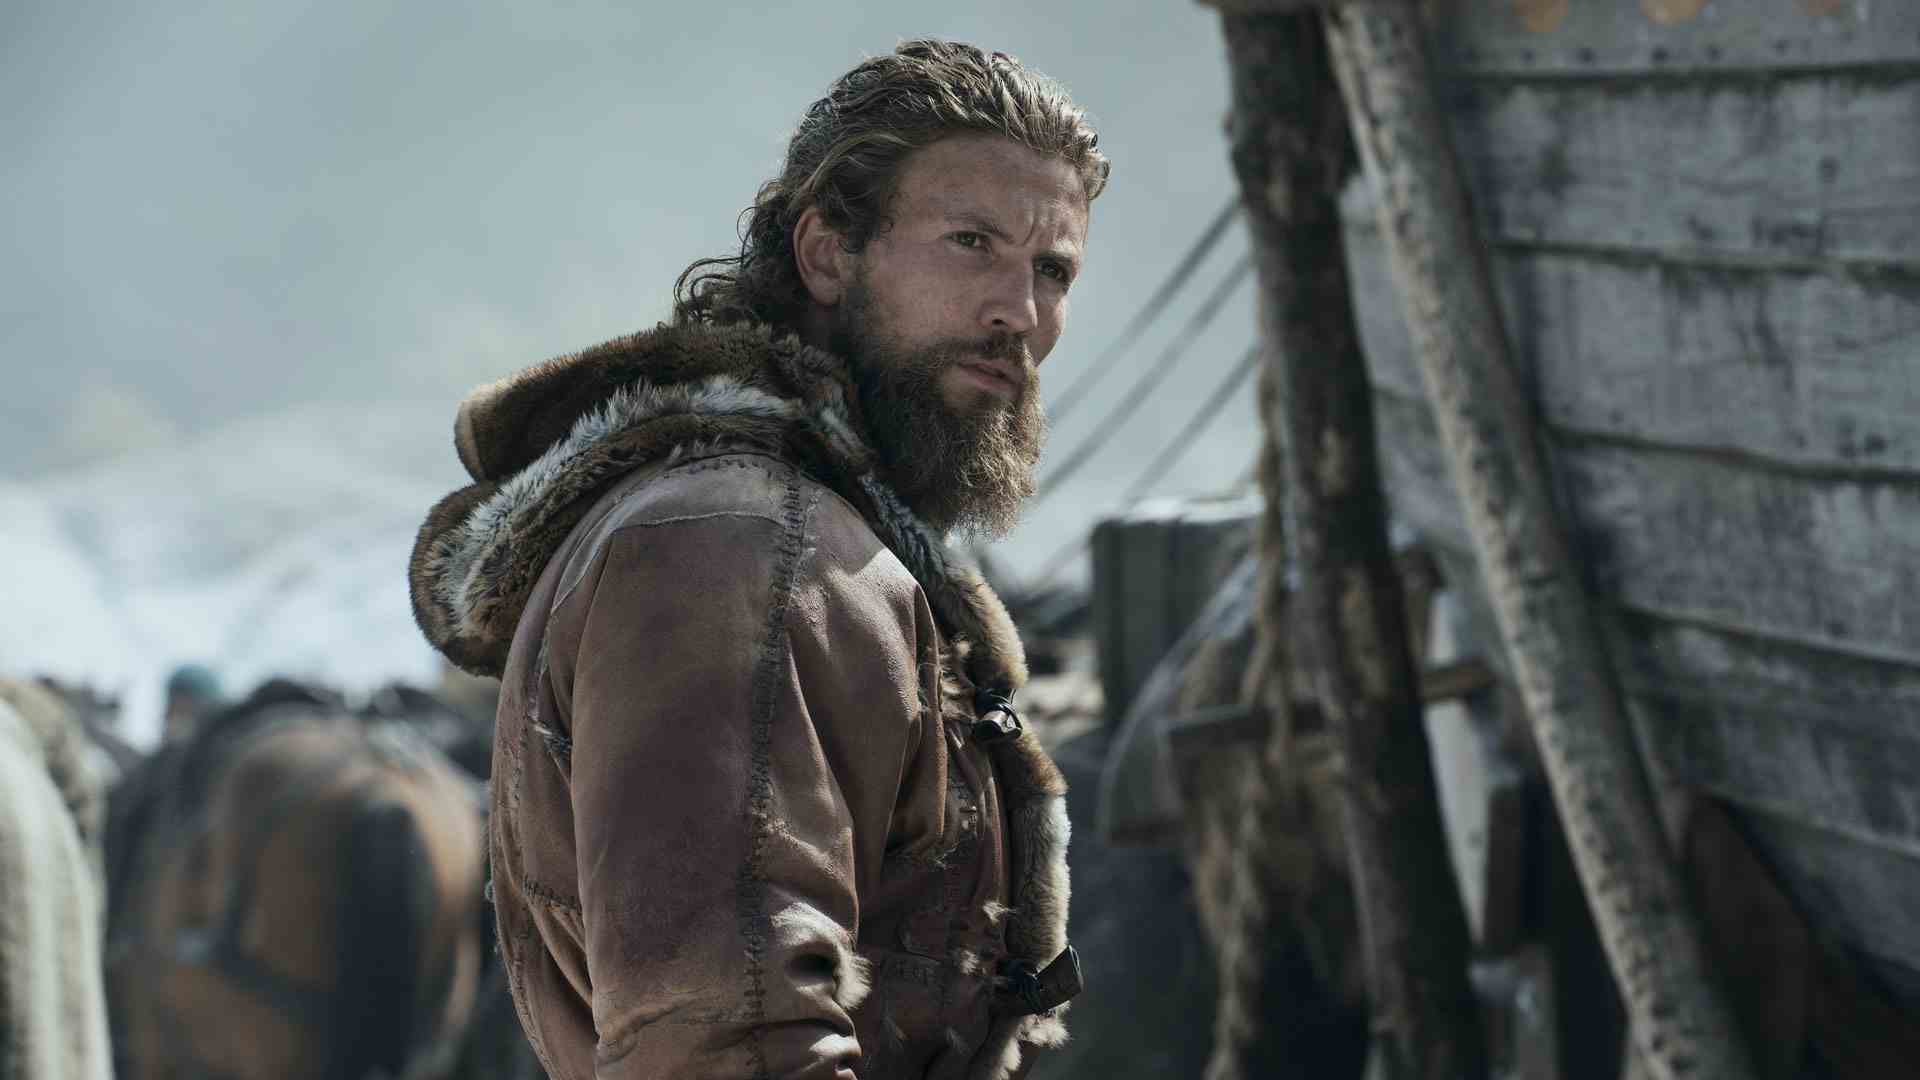 Harald, Vikings Valhalla 2. sezonda ekran dışındaki birine bakıyor